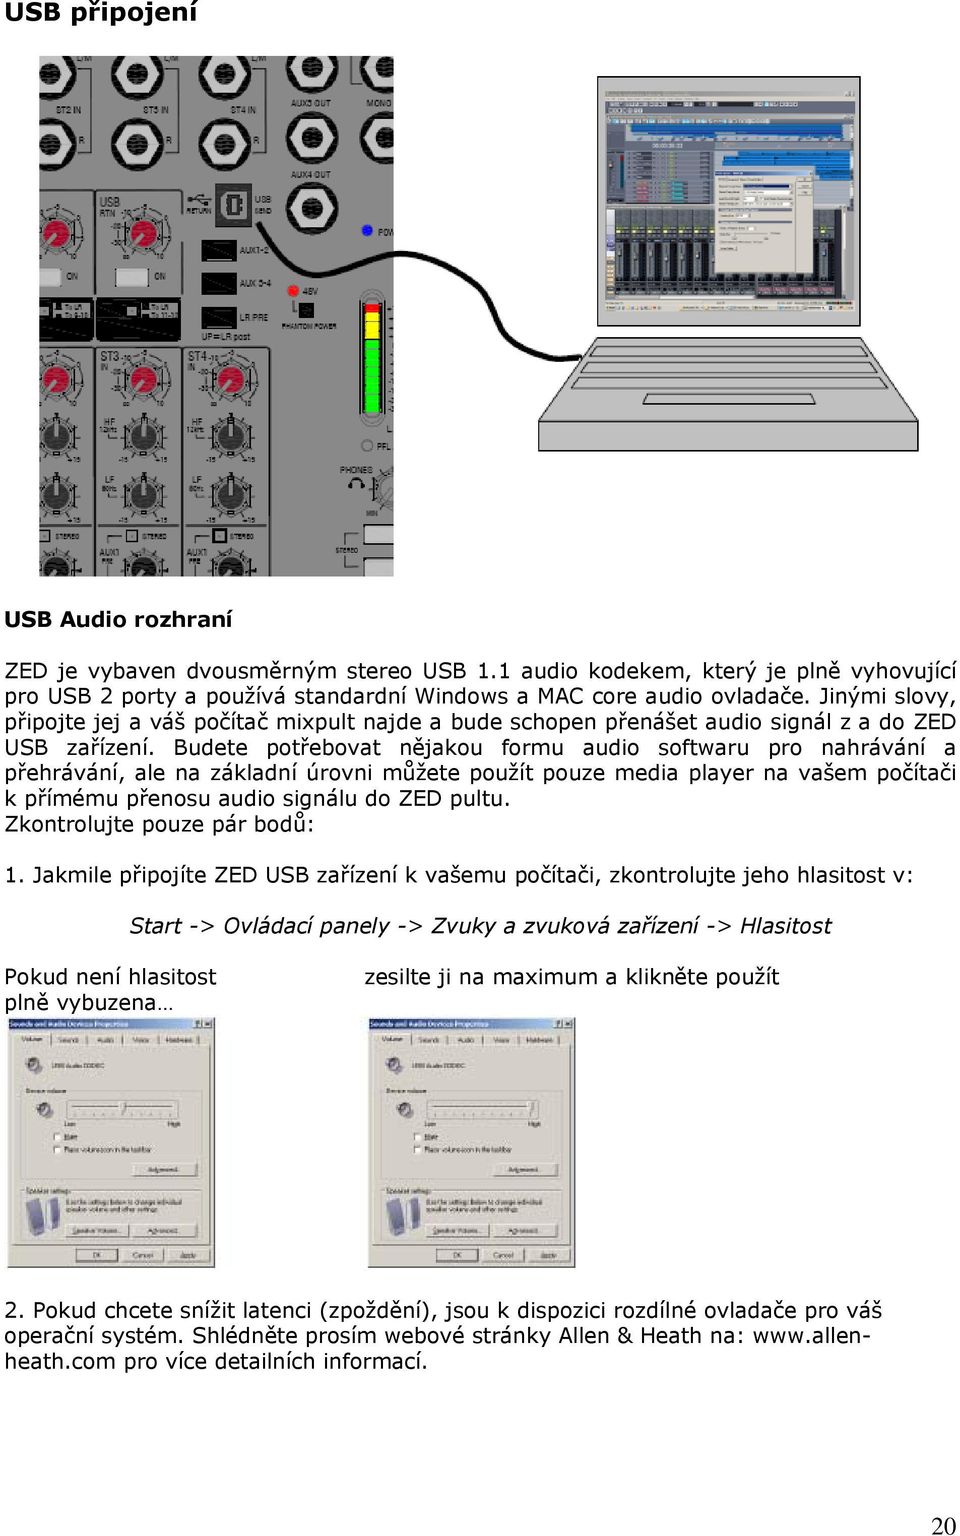 Budete potřebovat nějakou formu audio softwaru pro nahrávání a přehrávání, ale na základní úrovni můžete použít pouze media player na vašem počítači k přímému přenosu audio signálu do ZED pultu.